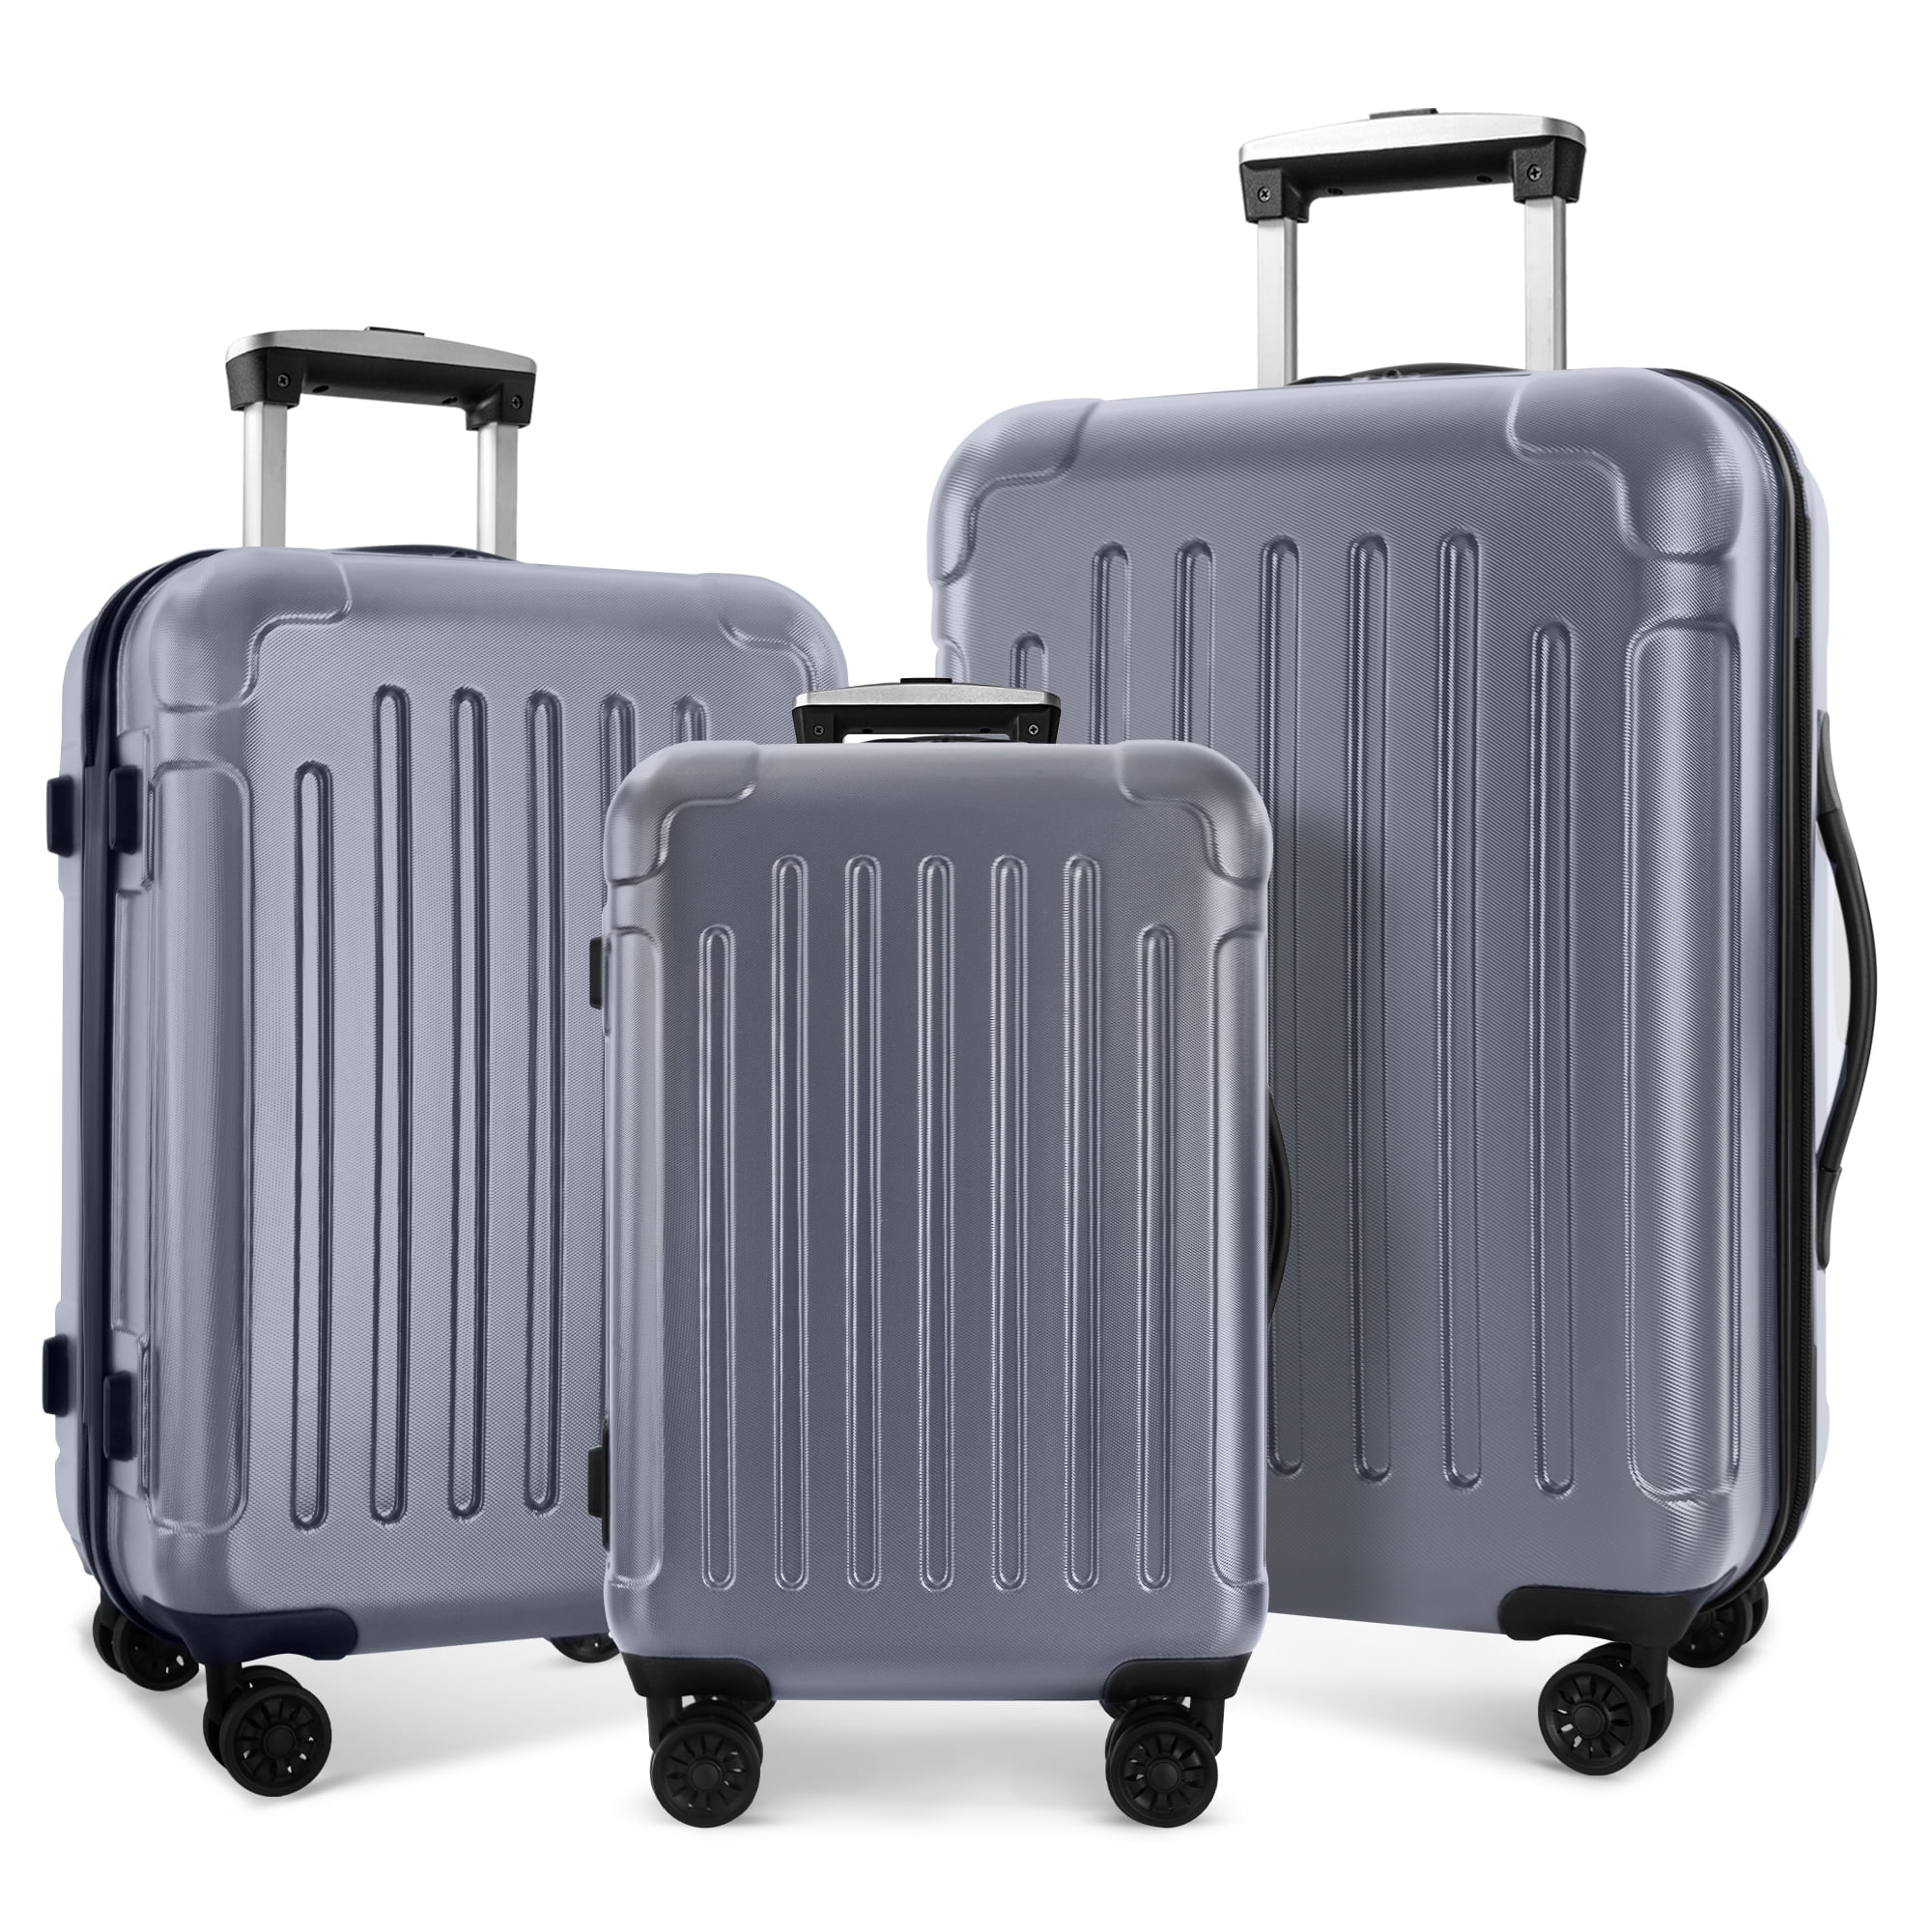 Homeika Luggage 3 Piece Sets, ABS+PC Hardshell 3pcs Expandable Luggage ...